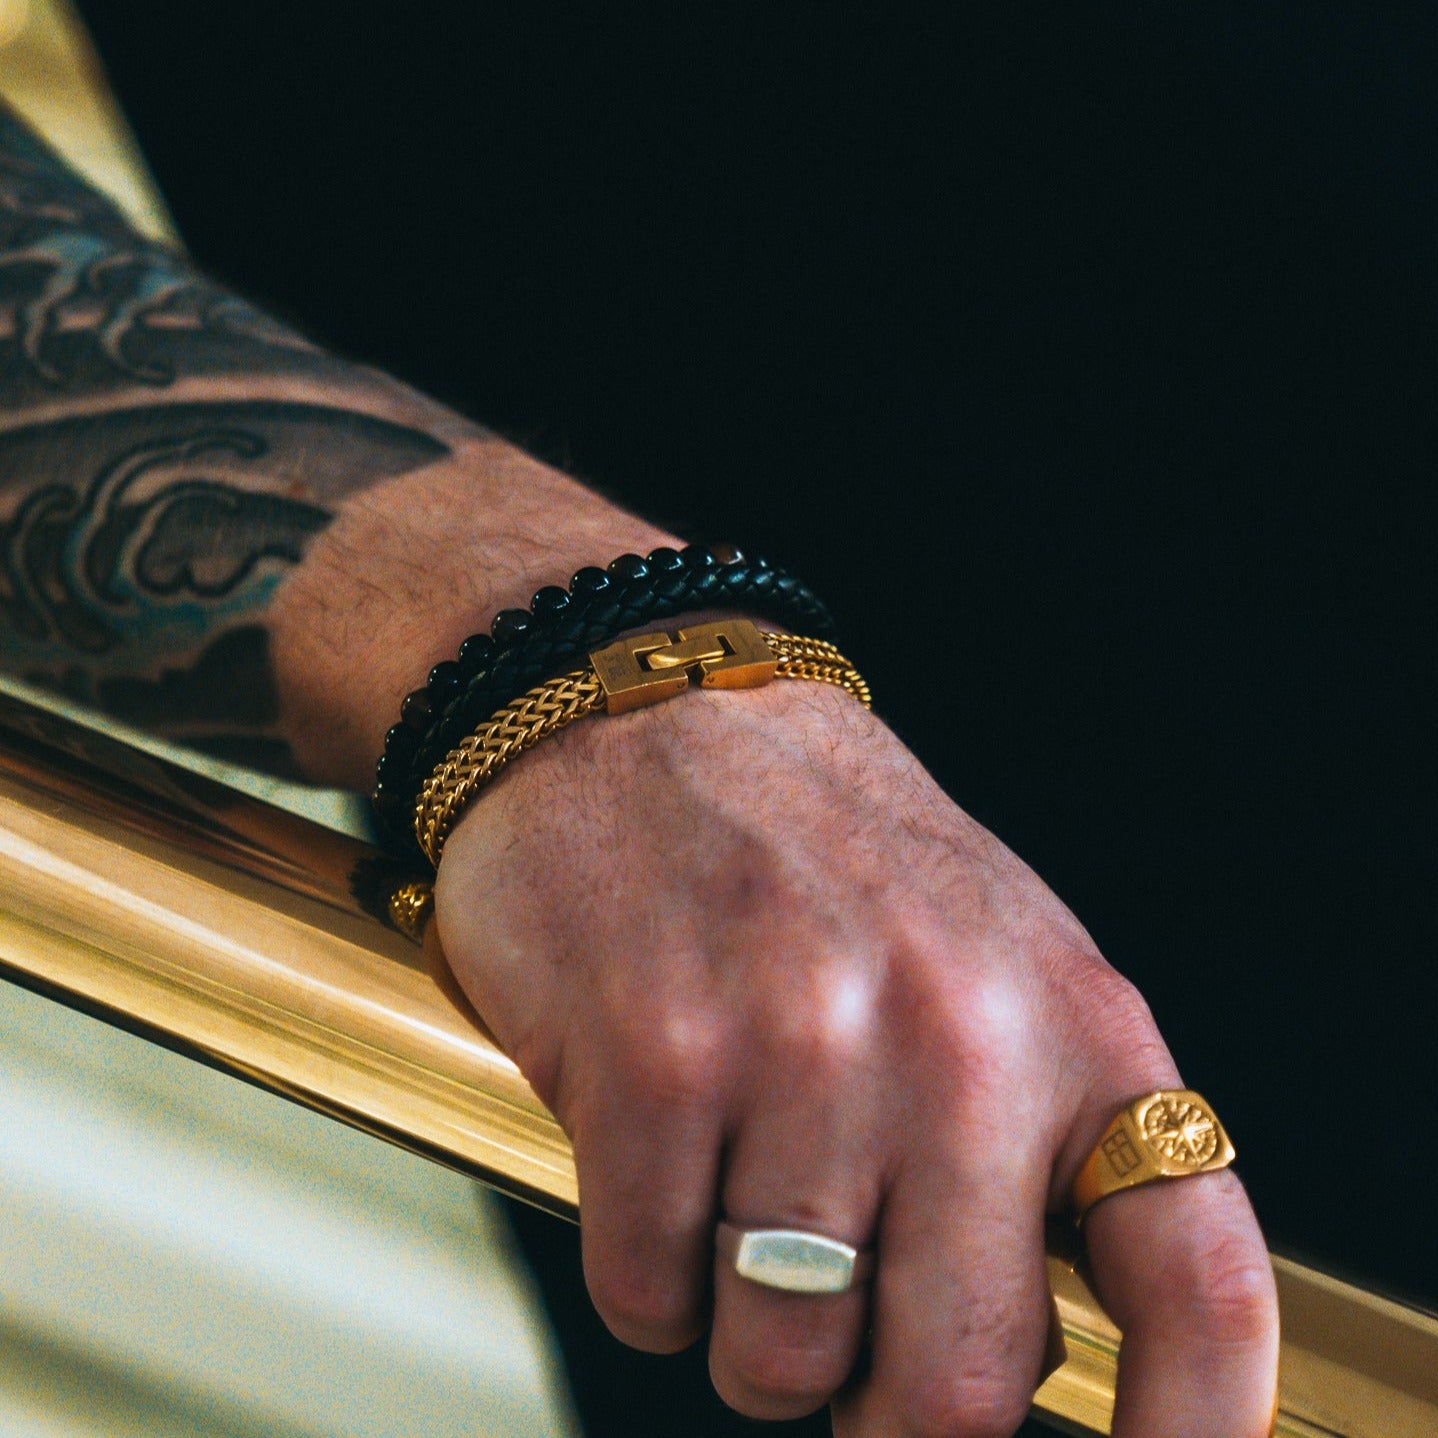 Fehu bracelet - Gold-toned